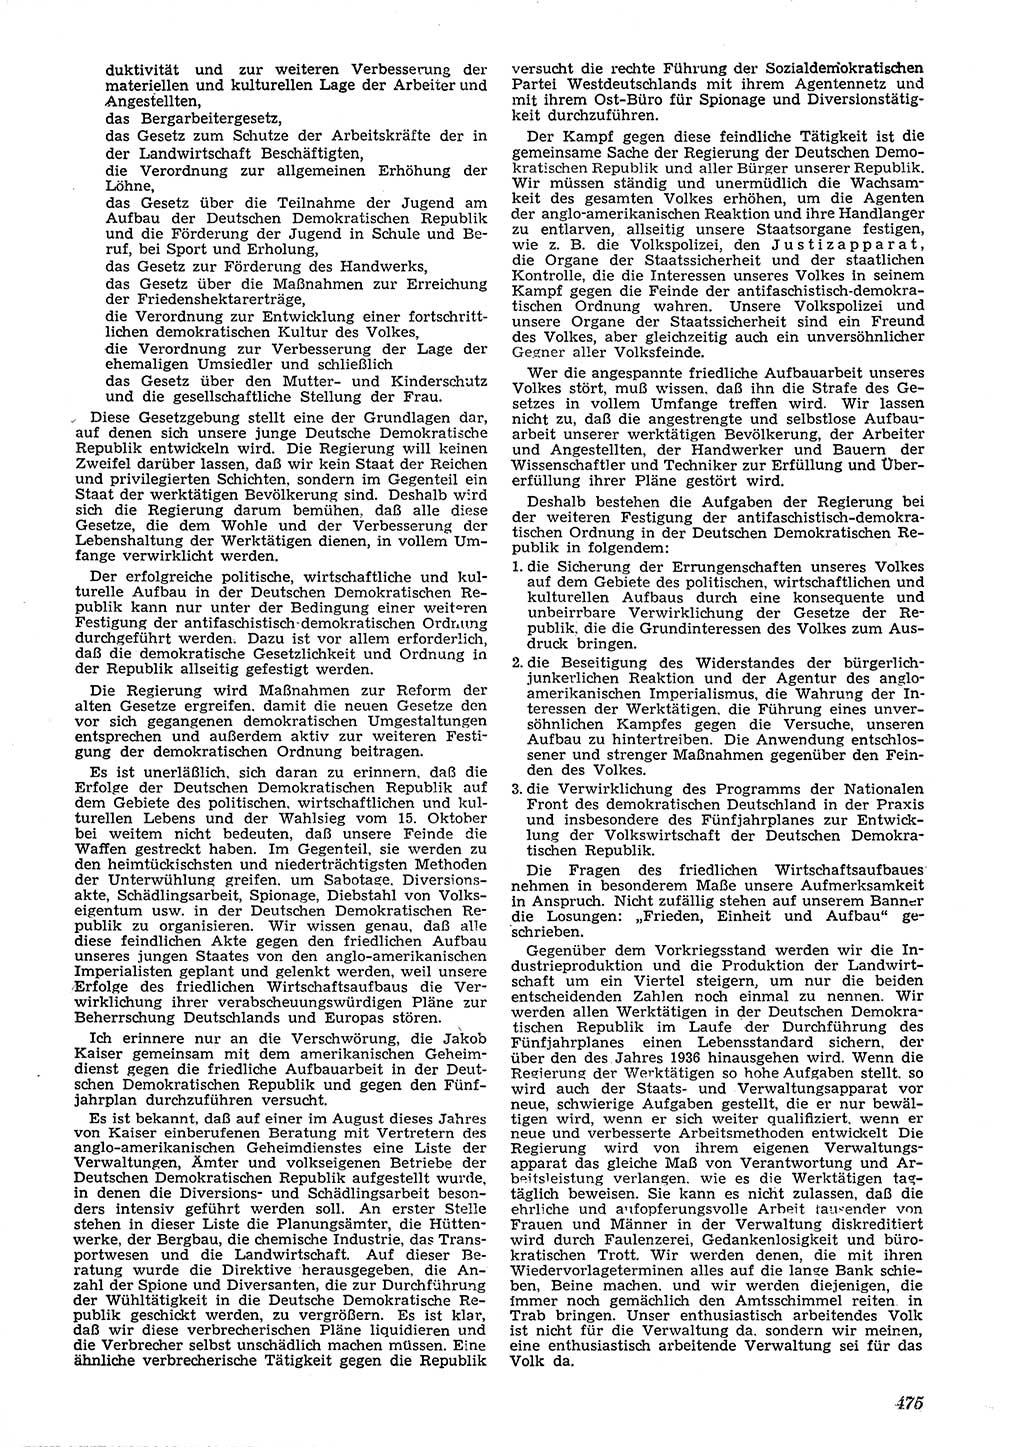 Neue Justiz (NJ), Zeitschrift für Recht und Rechtswissenschaft [Deutsche Demokratische Republik (DDR)], 4. Jahrgang 1950, Seite 475 (NJ DDR 1950, S. 475)